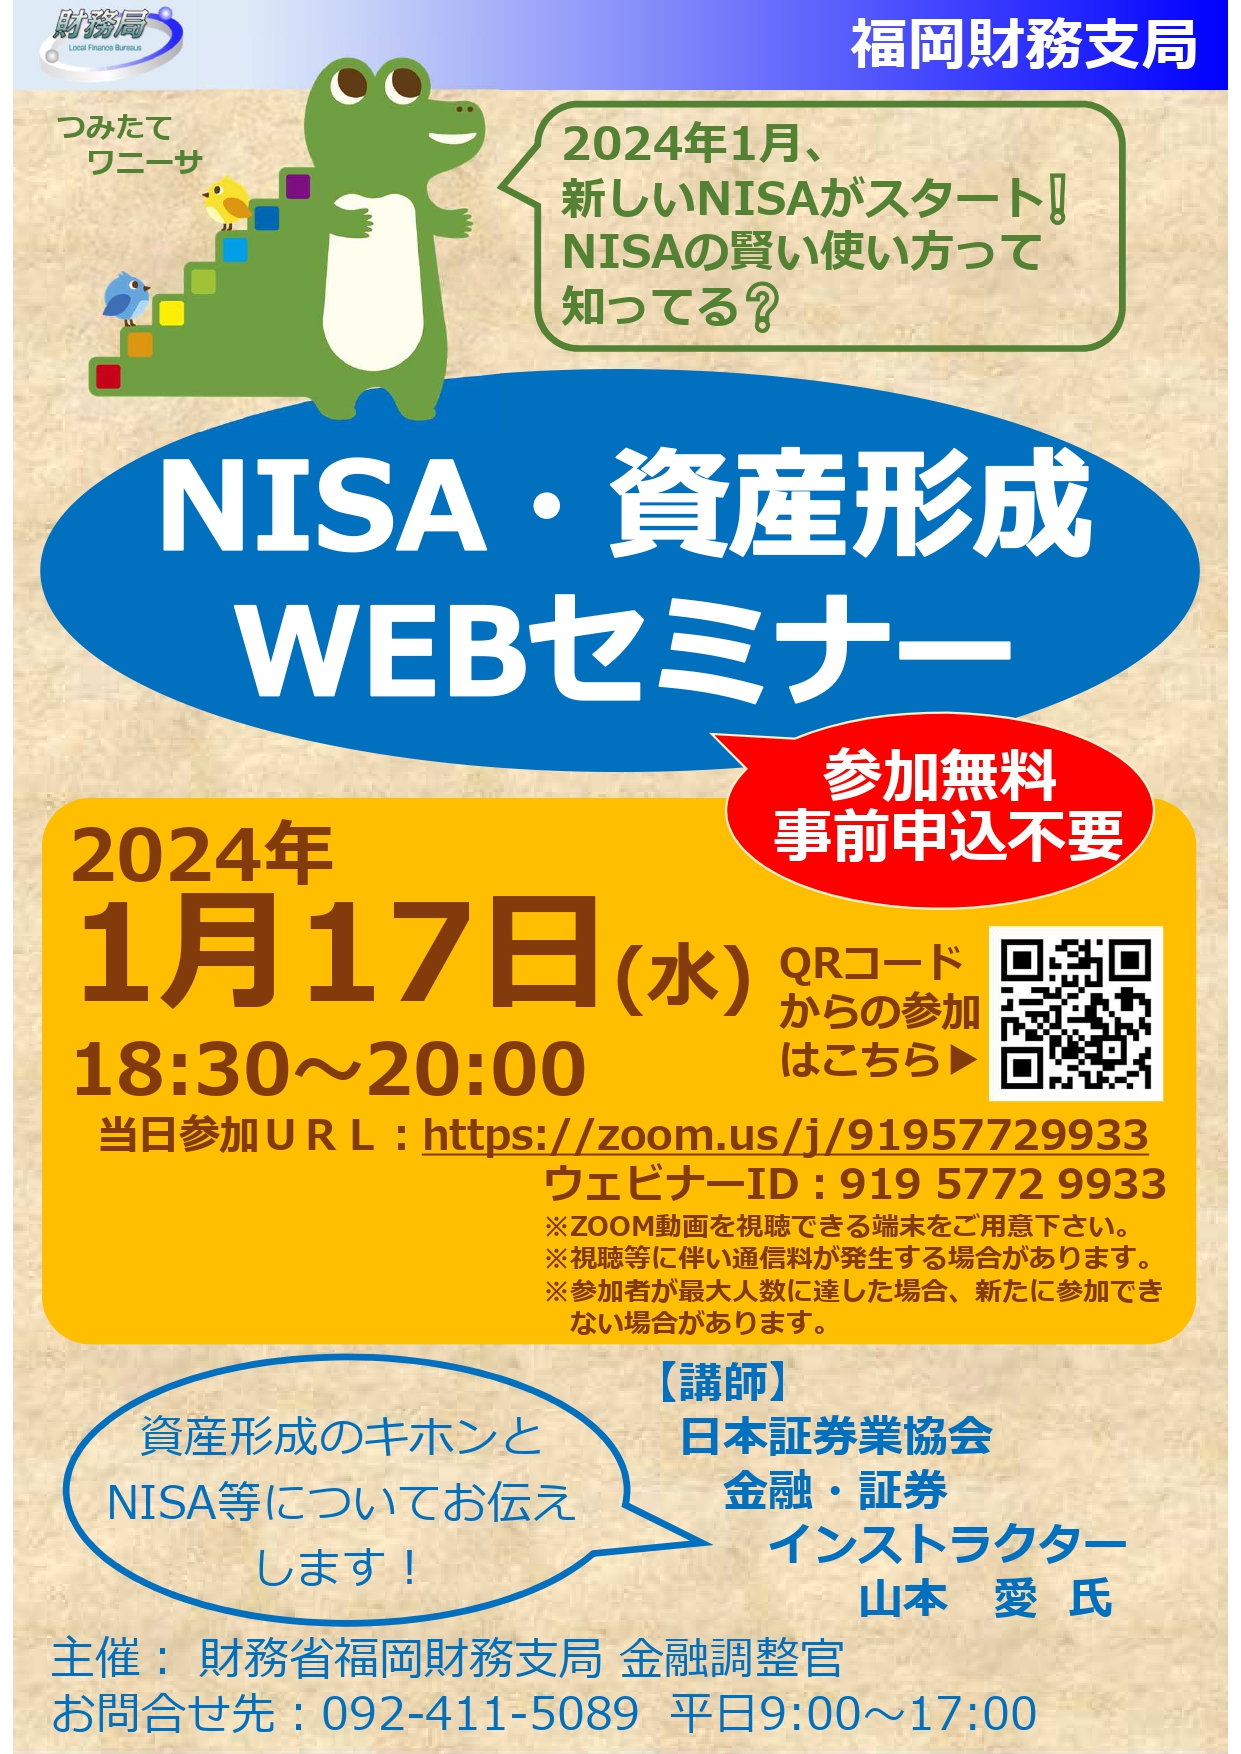 NISA・資産形成WEBセミナーを開催！